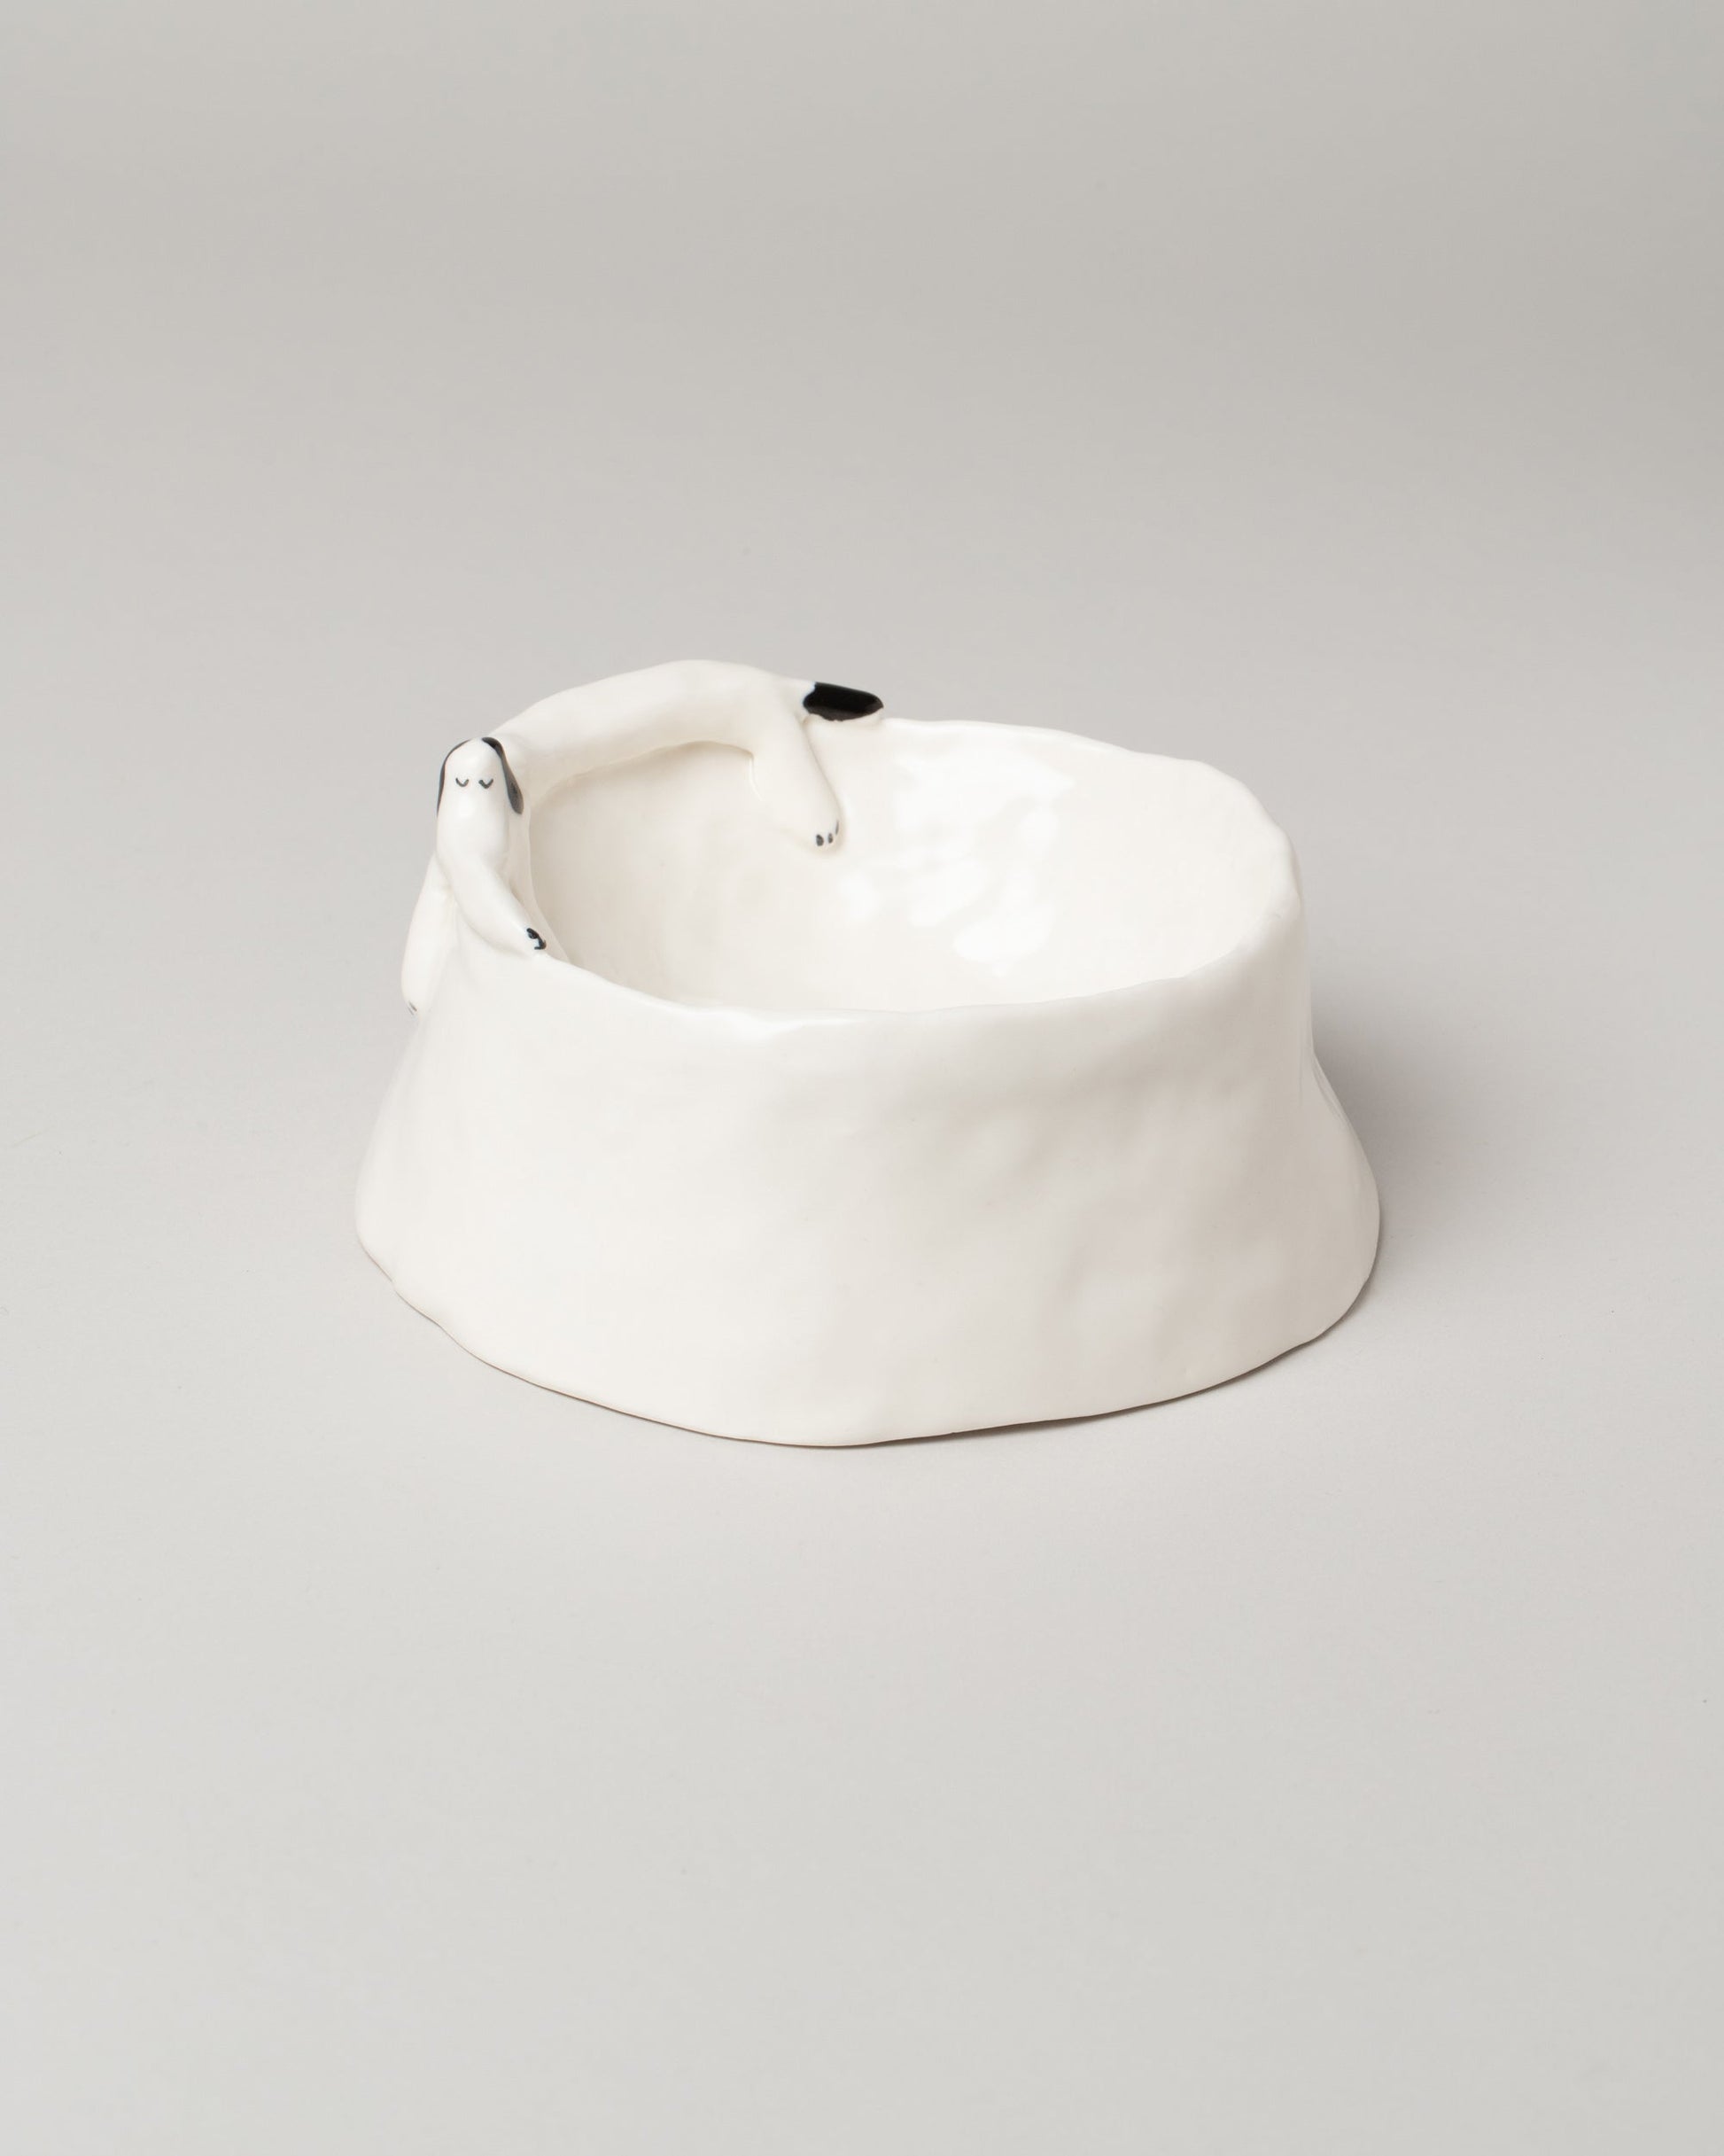 Eleonor Boström Bowl For Dog on light color background.